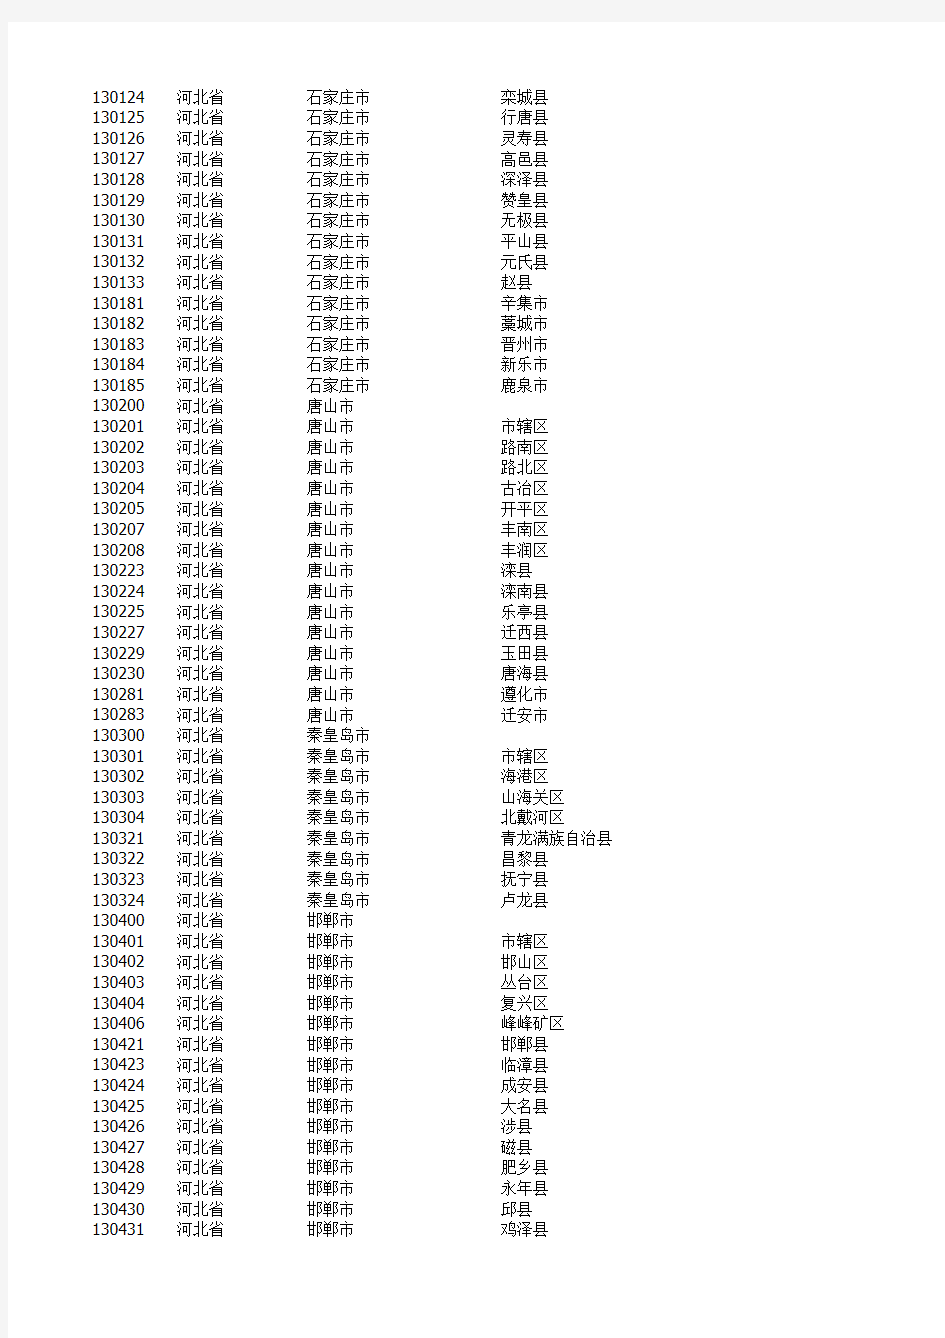 中国最新行政区划一览表(所有省市县名单,2012更新)